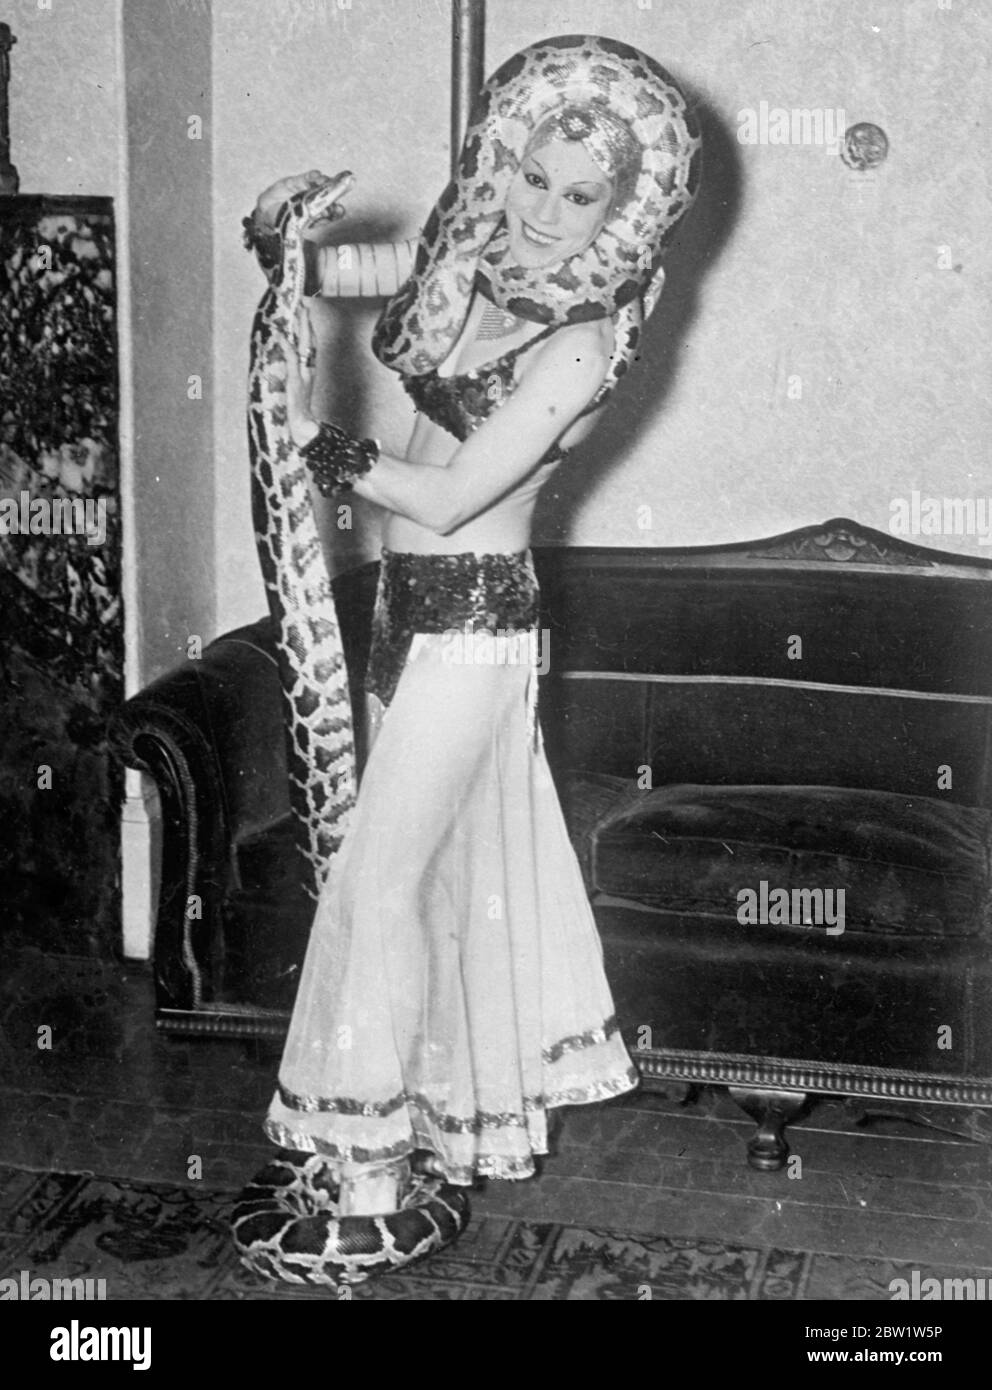 Aerial, eine striptease-Schauspielerin aus Südamerika, hat einen neuen Nervenkitzel in ihre Handlung eingeführt und tritt in New York mit zwei zehn Fuß Pythons auf. Foto zeigt: Aerial, die südamerikanische striptease-Schauspielerin, mit ihren Pythons. 1937 Stockfoto